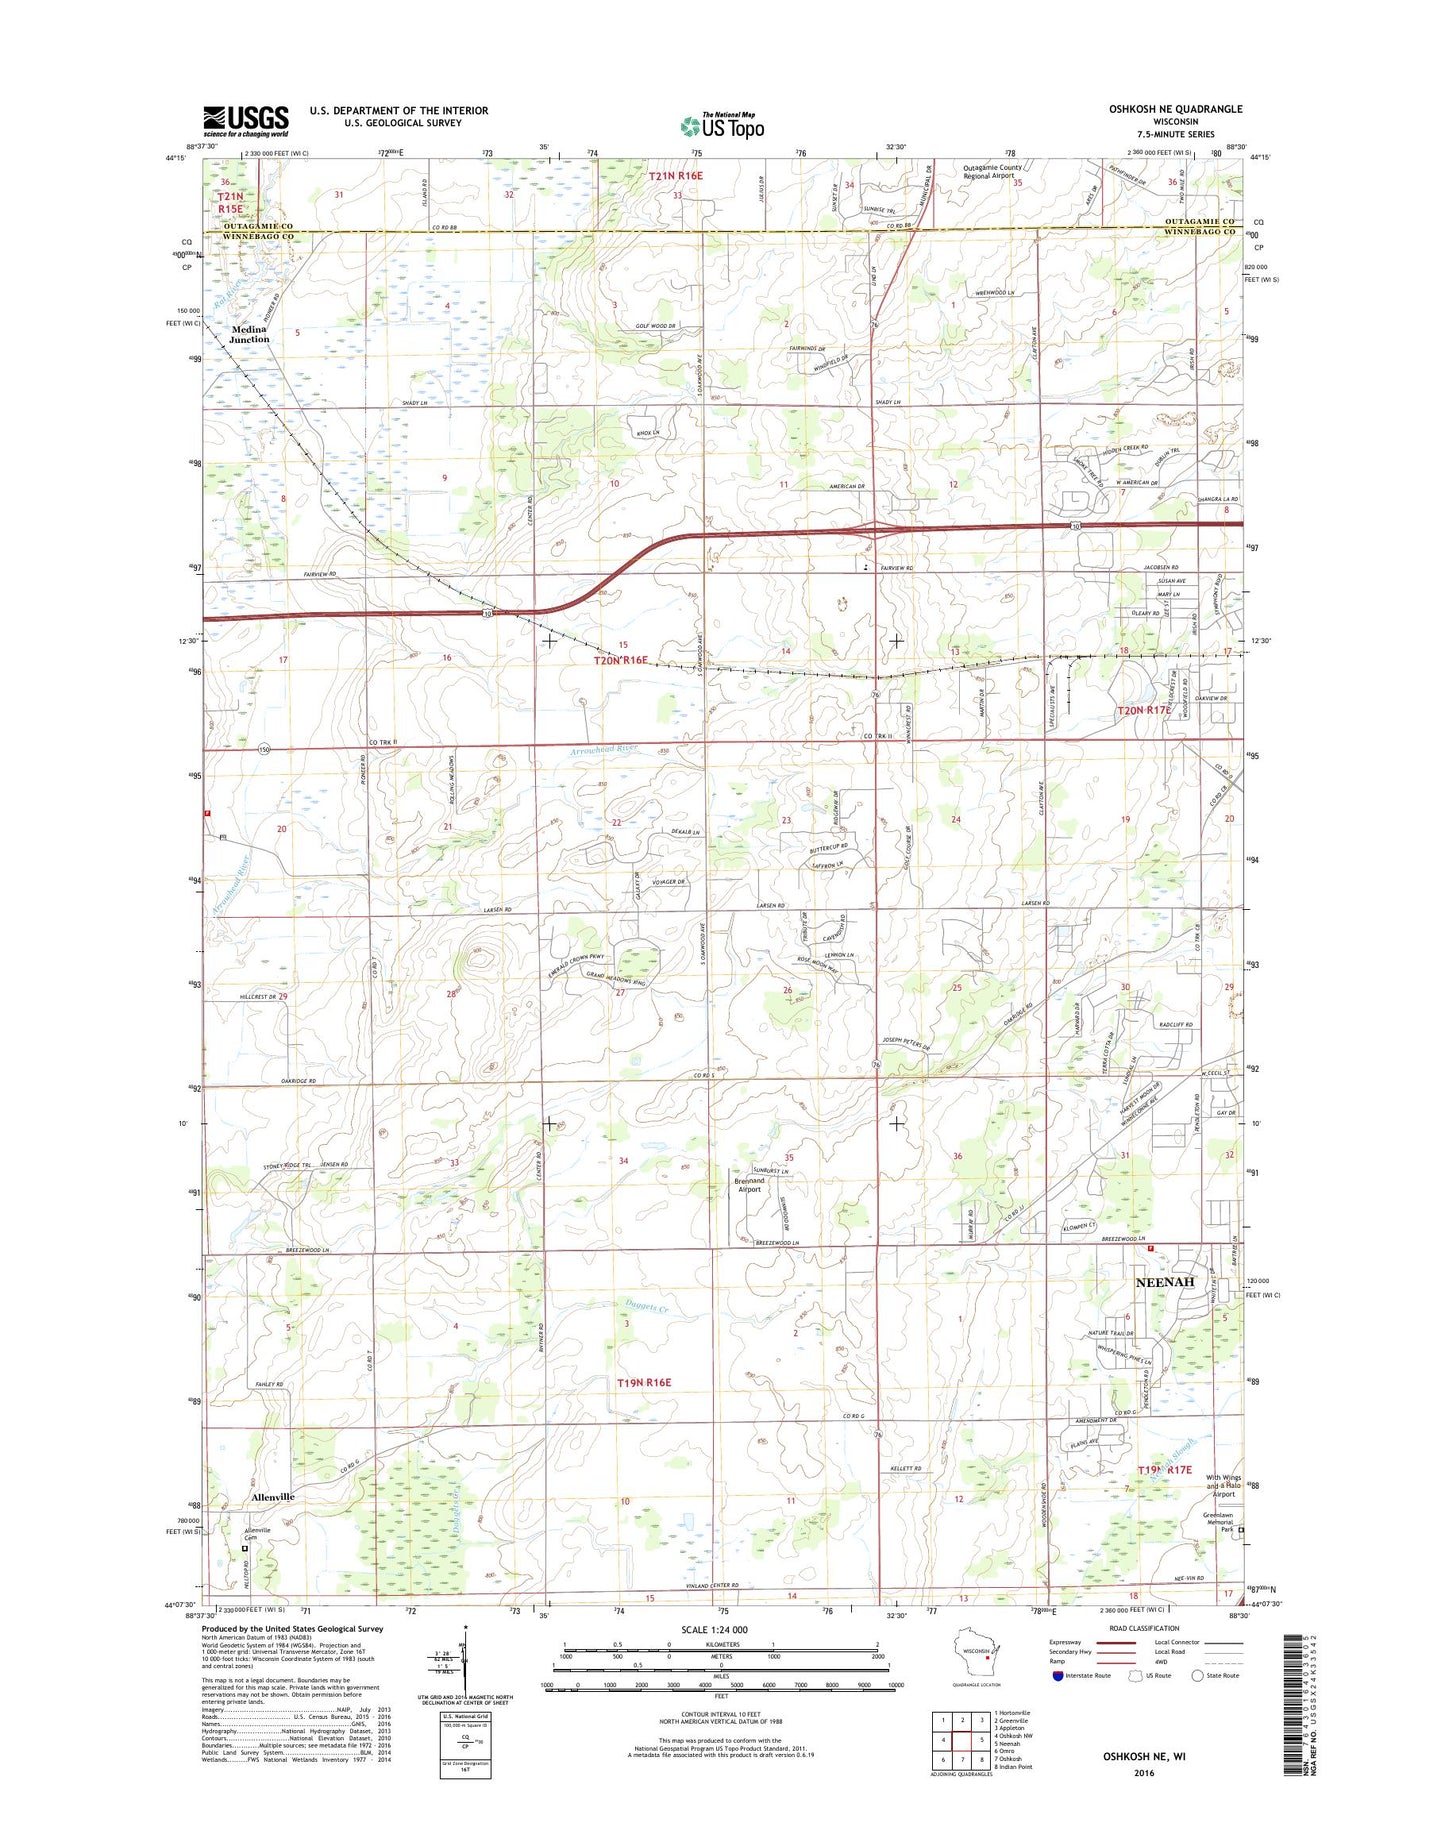 Oshkosh NE Wisconsin US Topo Map Image